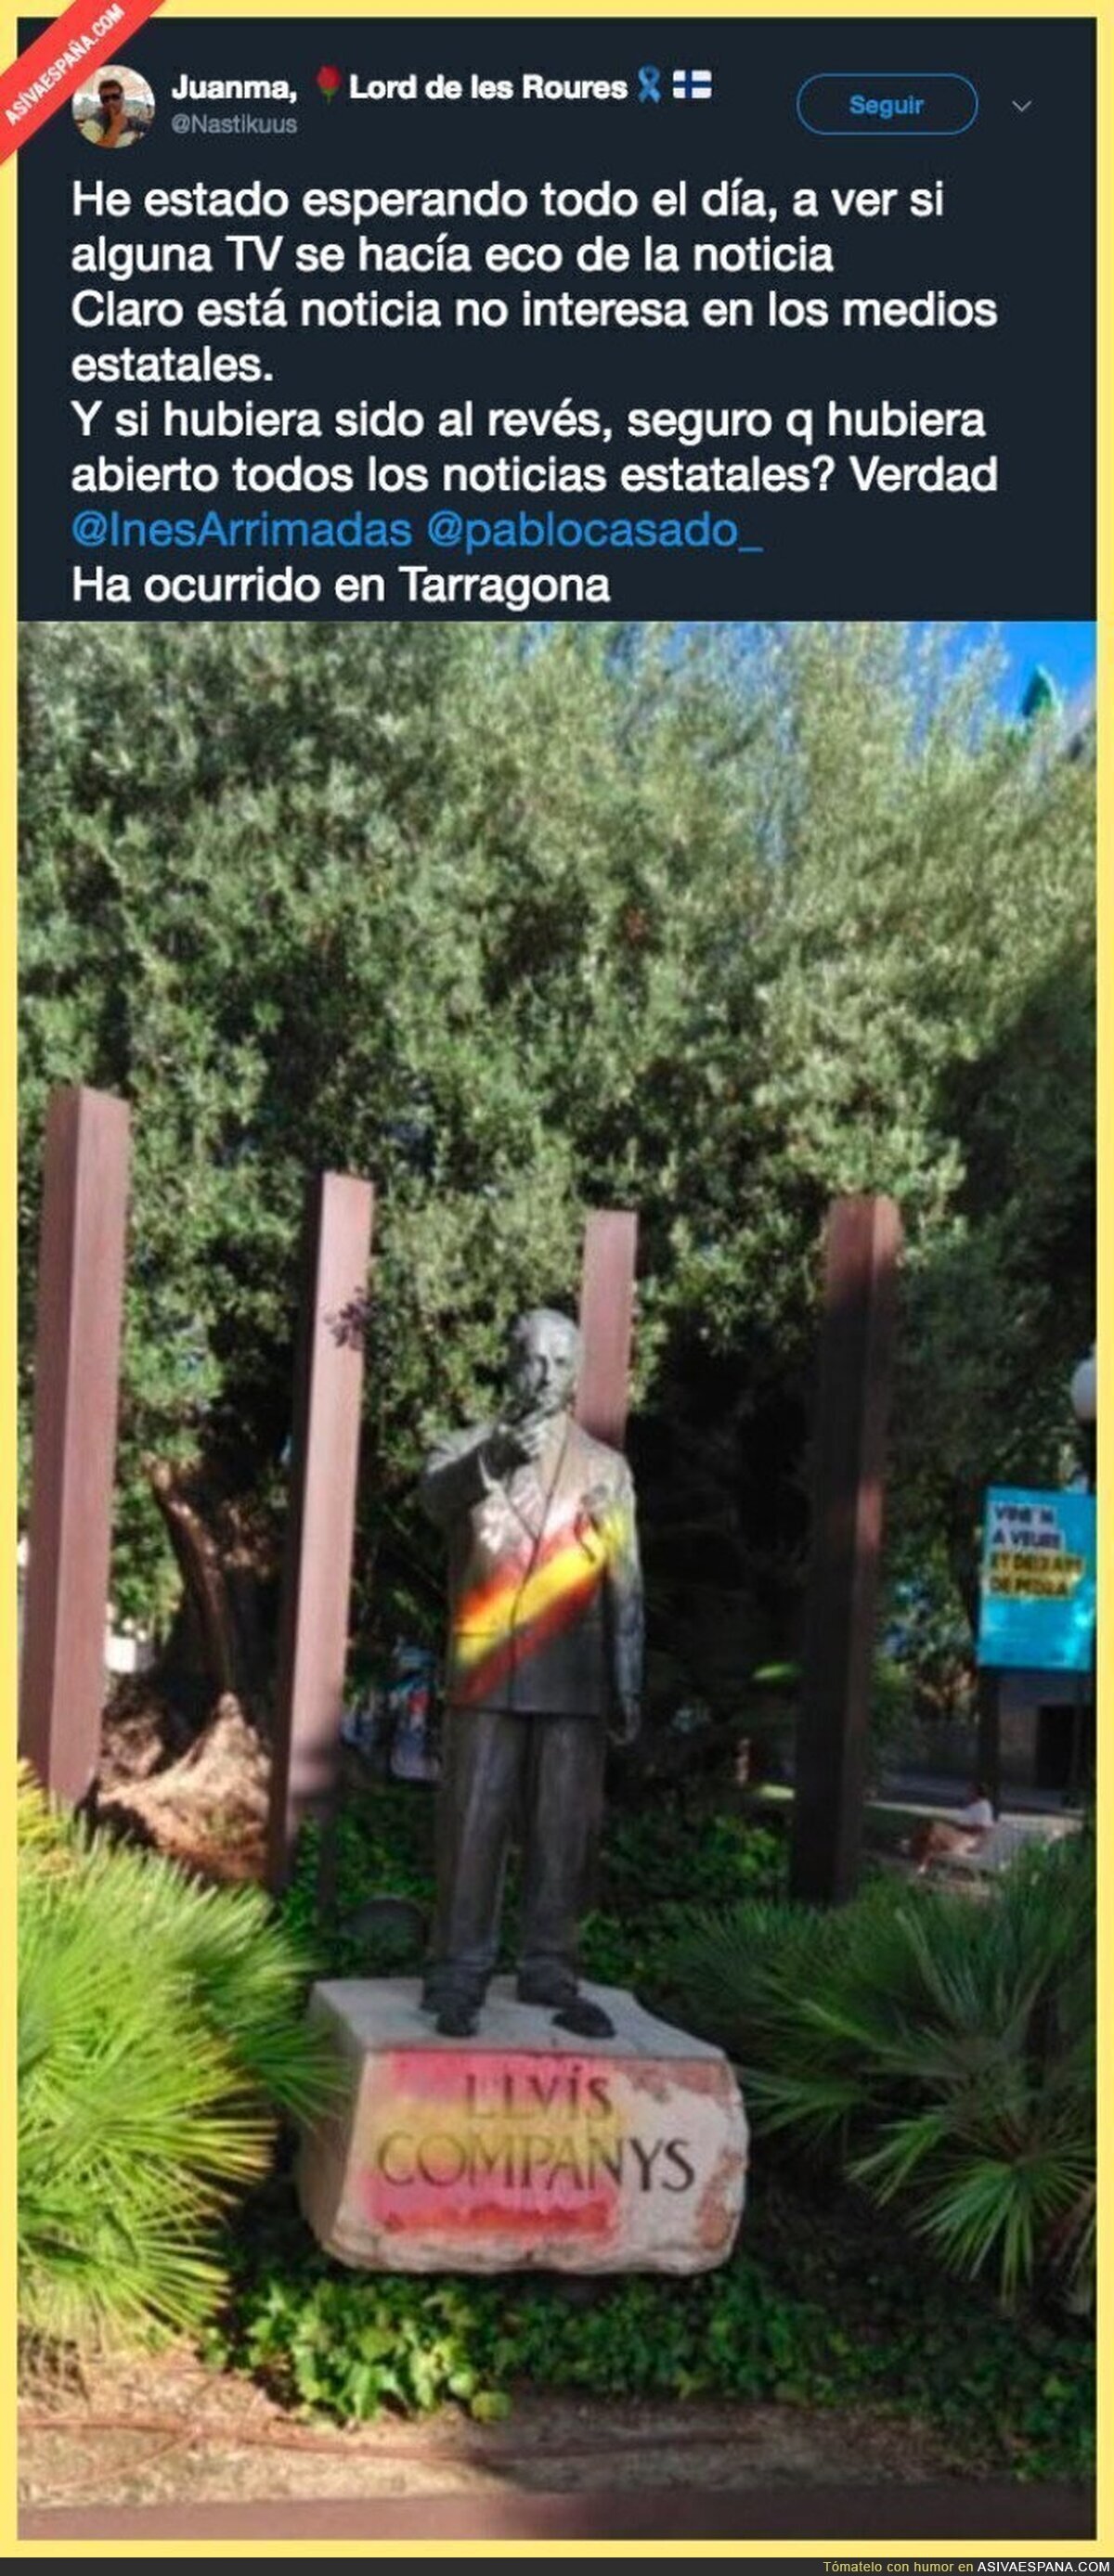 Vandalismo a la estatua de Lluis Companys que las TV de España no te informarán nunca